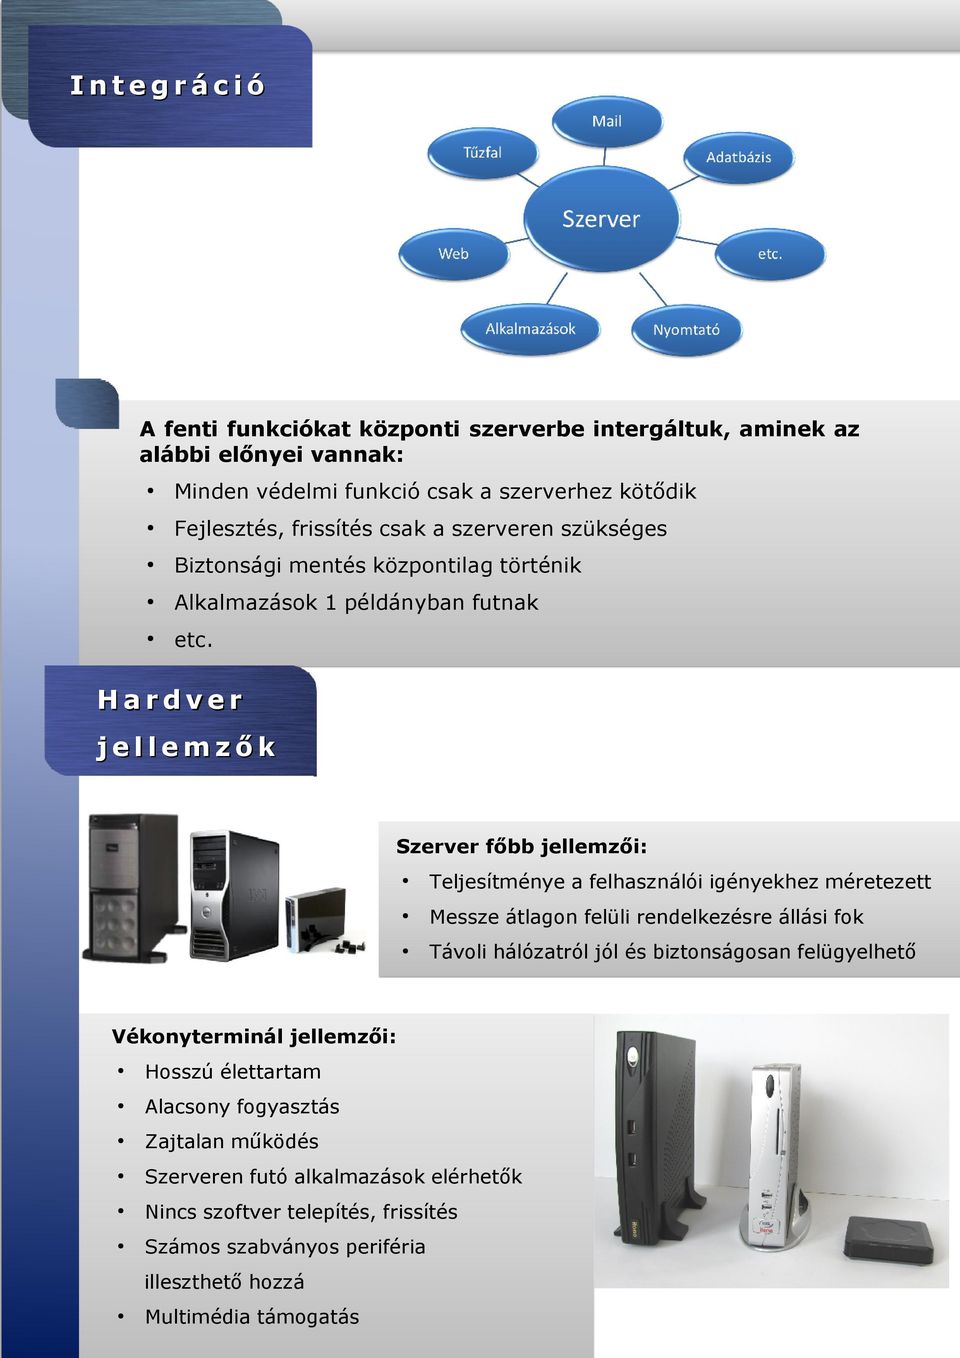 Hardver jellemzők Szerver főbb jellemzői: Teljesítménye a felhasználói igényekhez méretezett Messze átlagon felüli rendelkezésre állási fok Távoli hálózatról jól és